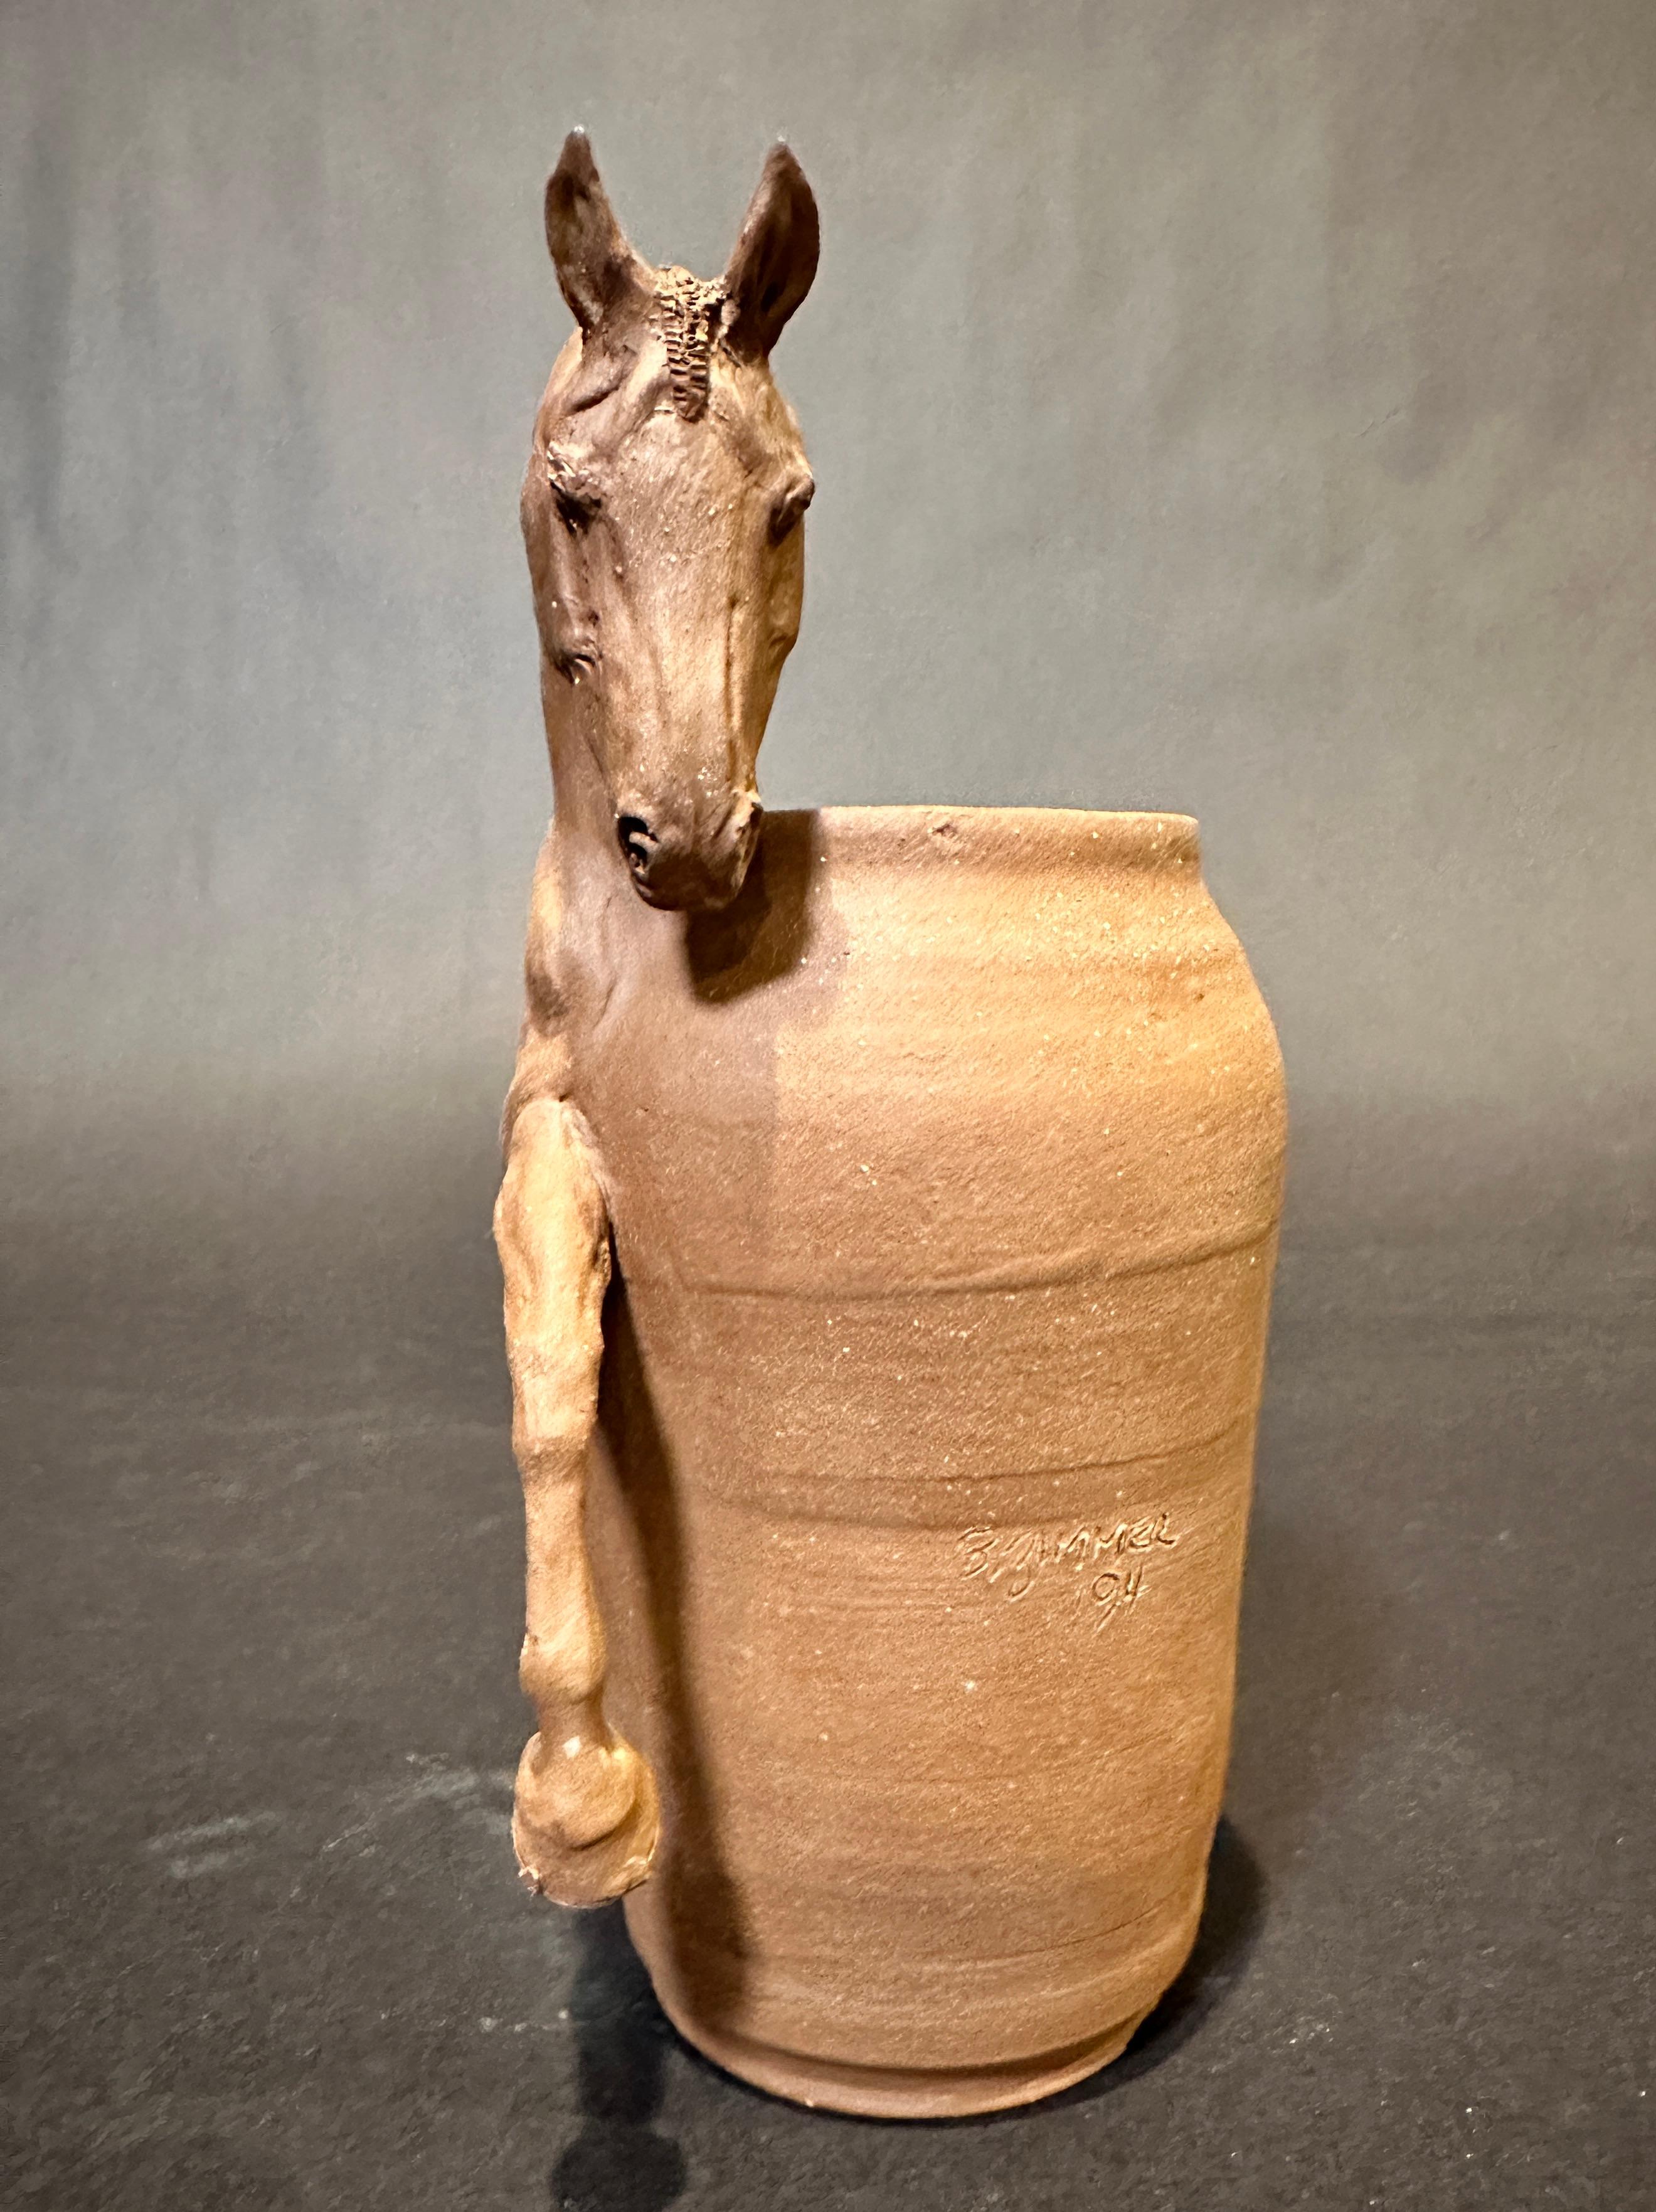 Vase original en grès de Beverly Zimmer représentant un équidé. Magnifique vase sculptural en argile cuite représentant un profil de cheval athlétique.
Depuis le début de sa carrière, l'industrie du cheval de sport a été la cible de Beverly Zimmer.